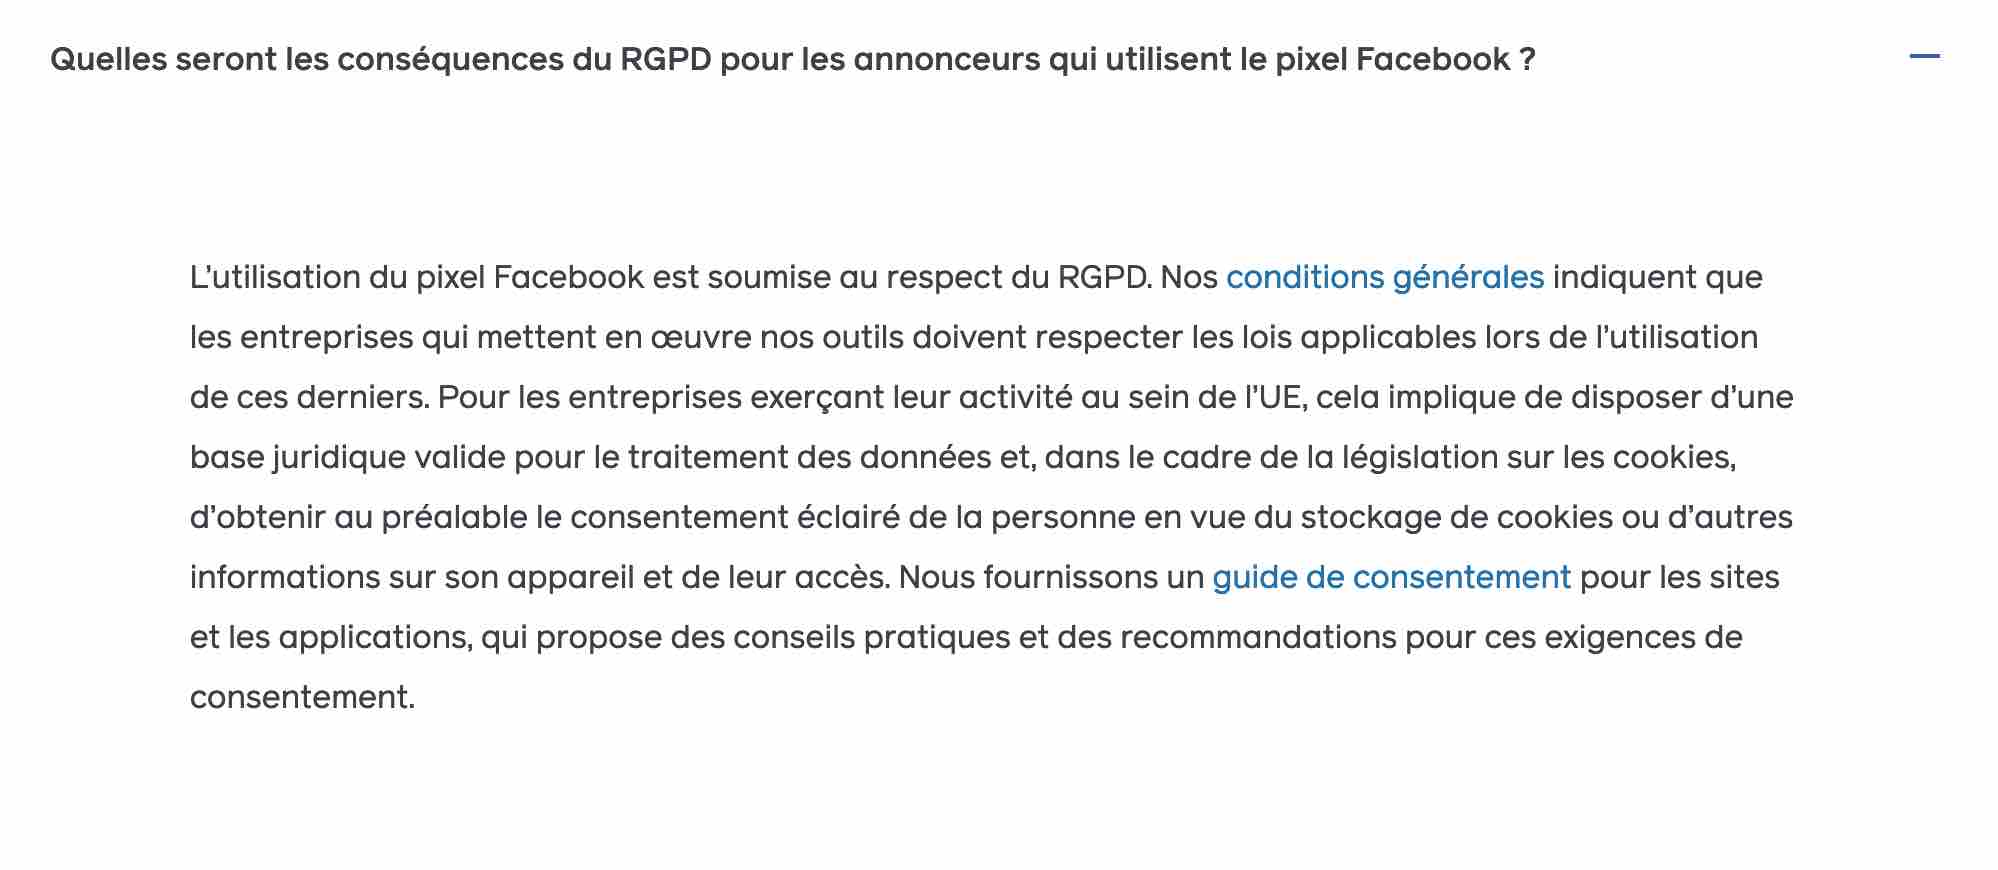 Conséquences du RGPD pour le pixel Facebook.